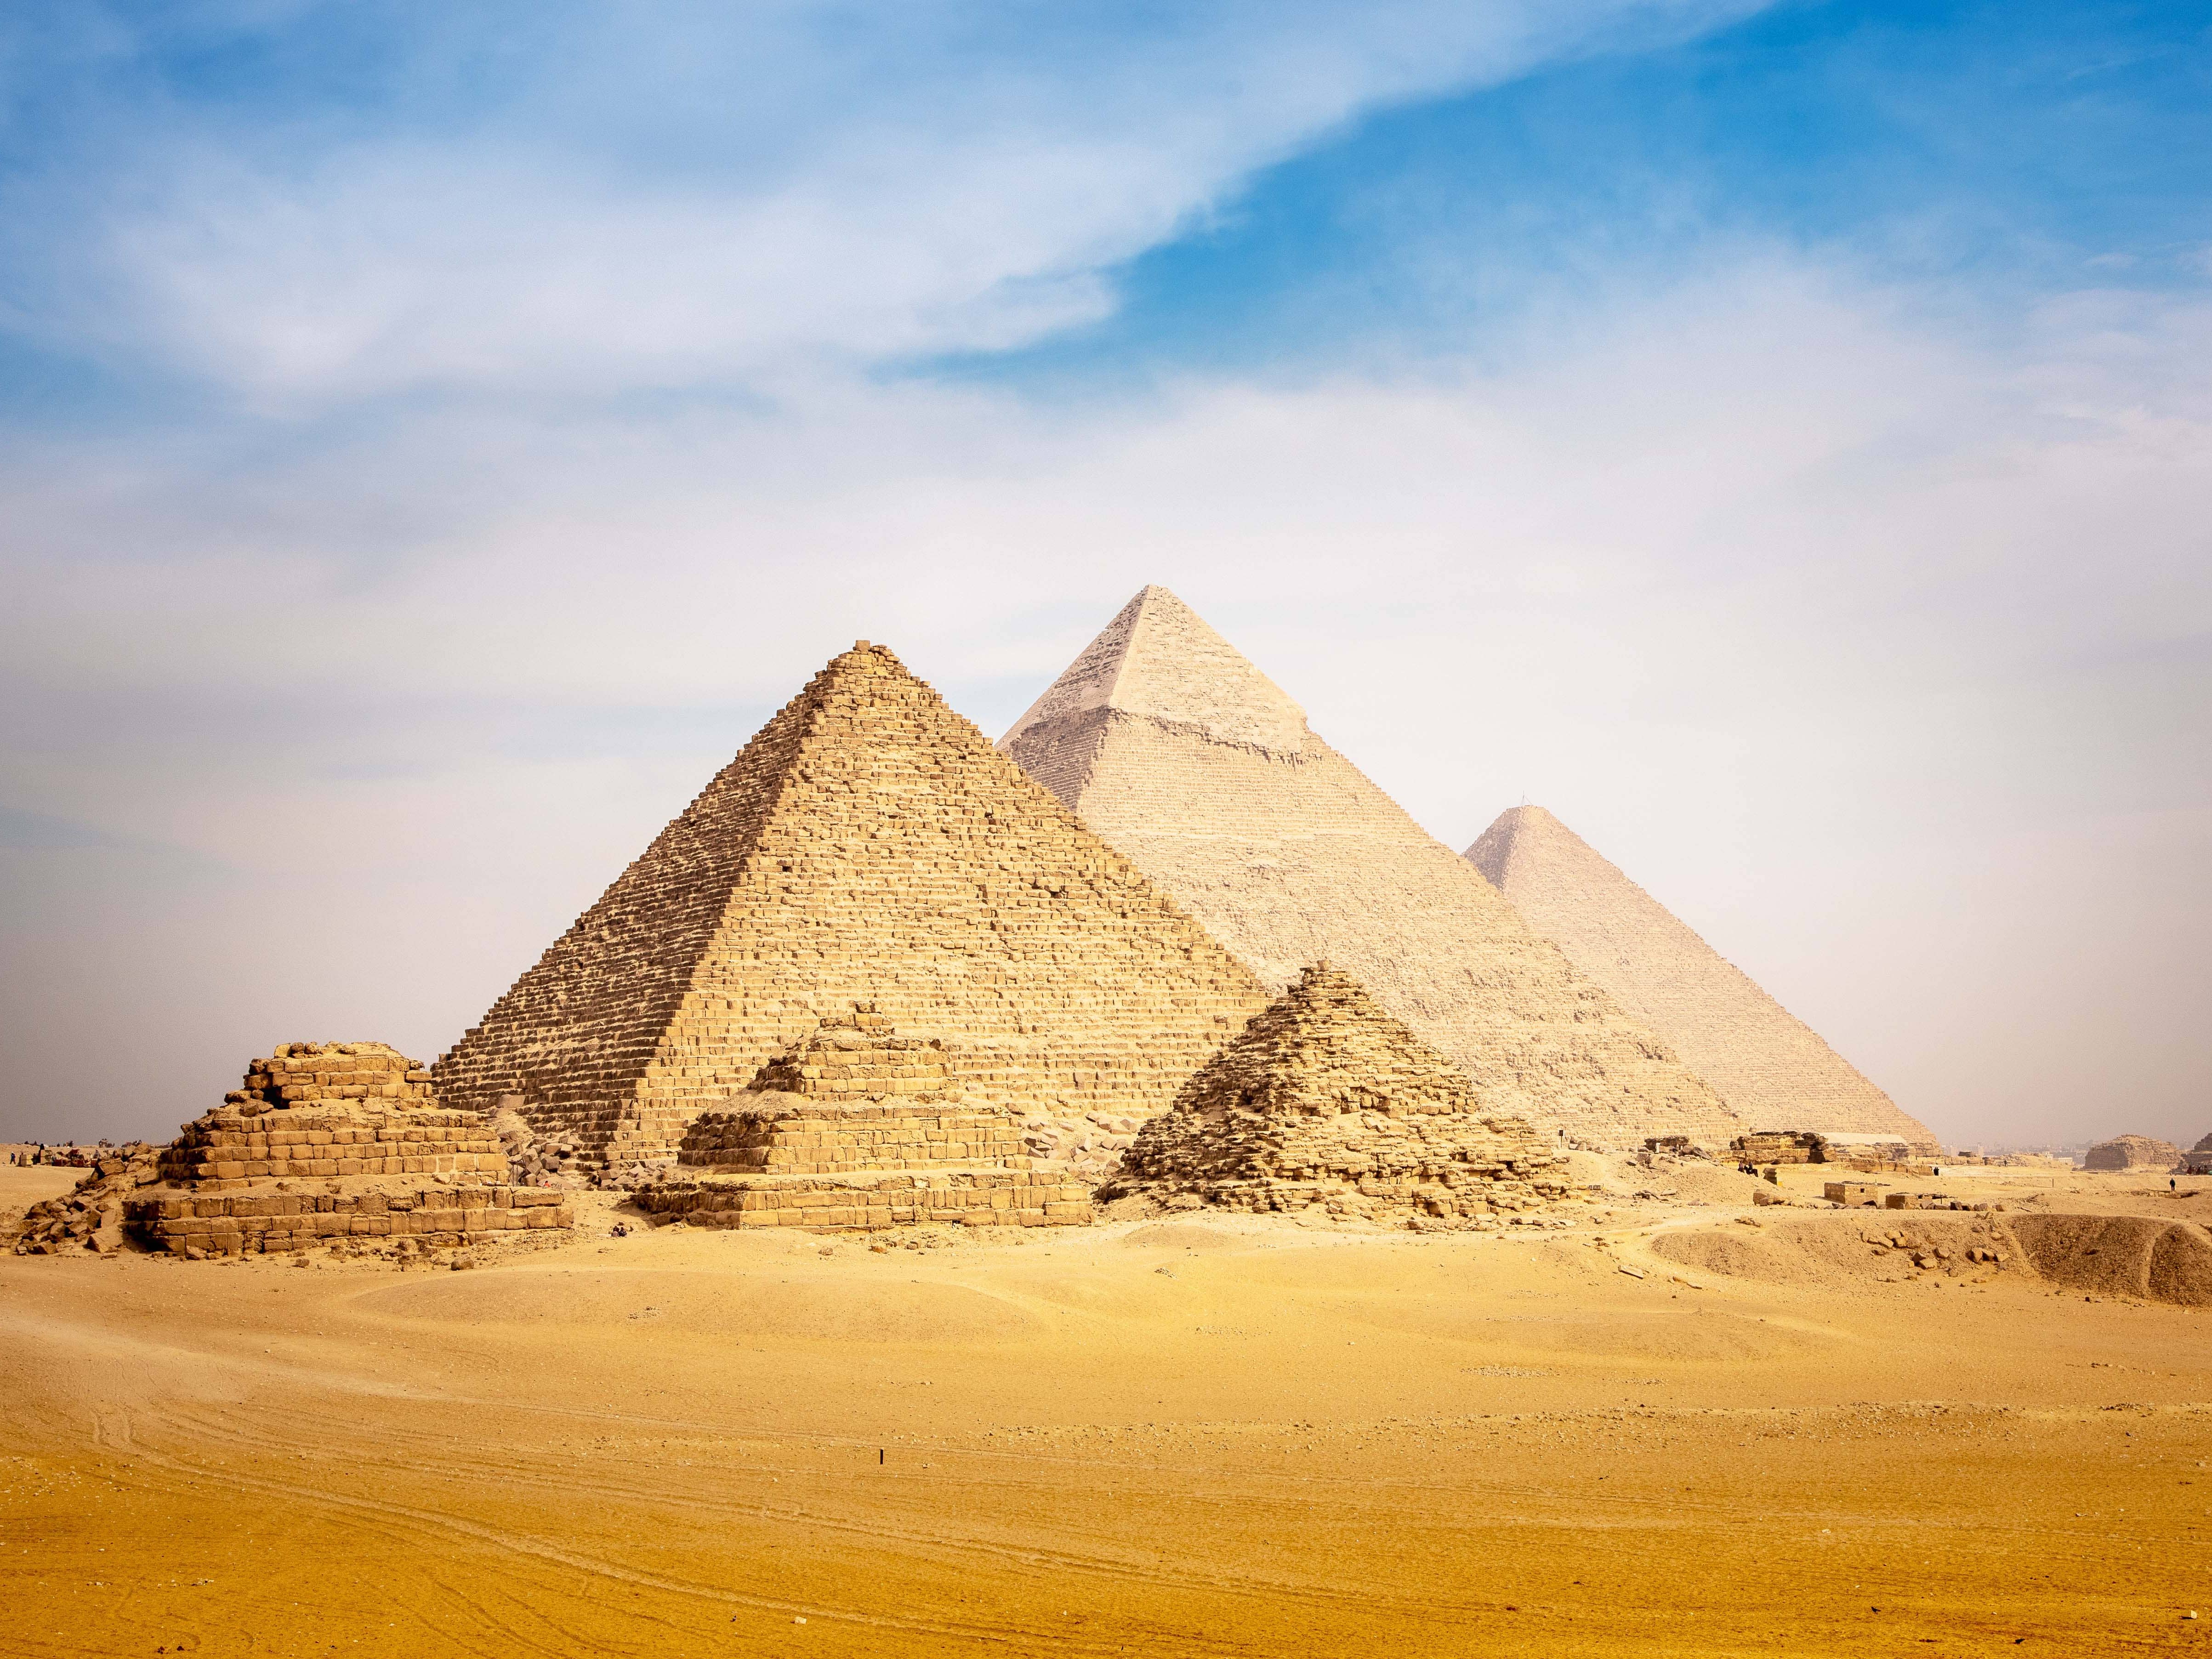  Visit the iconic Pyramids at Giza  